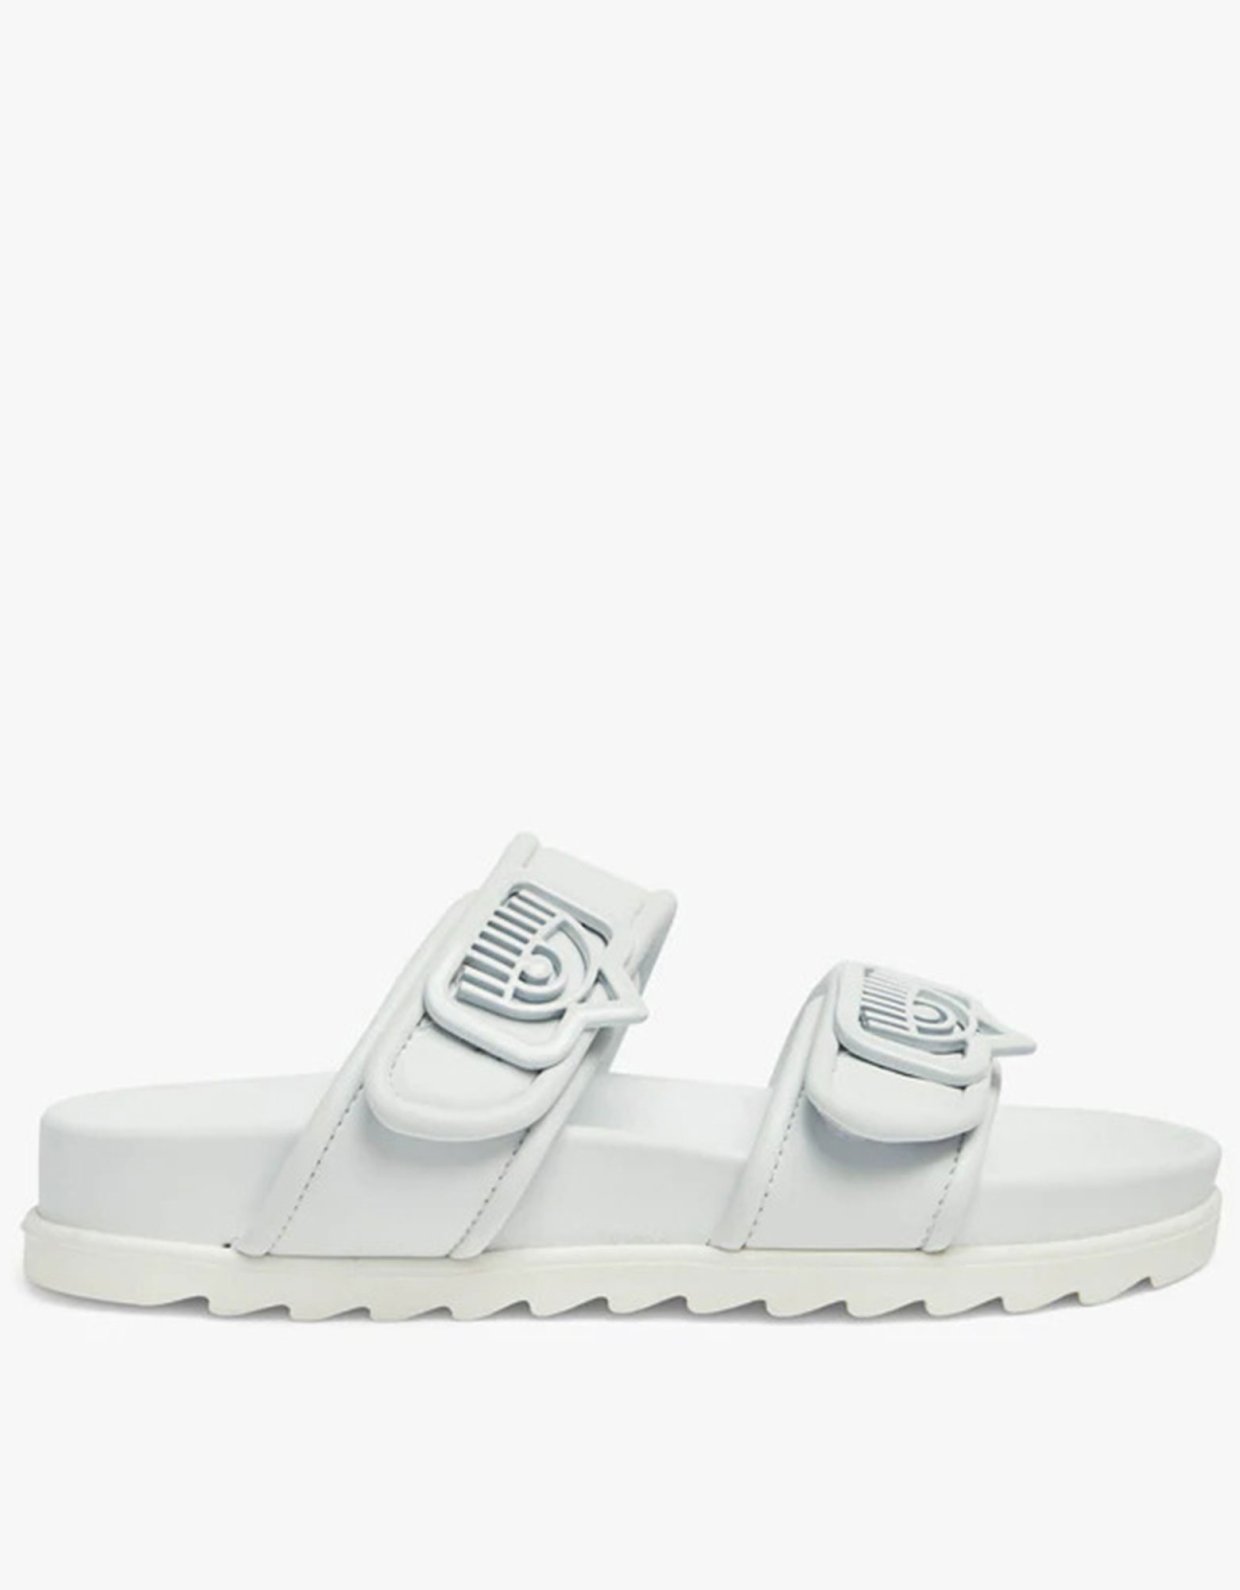 Chiara Ferragni Double strap sandal white